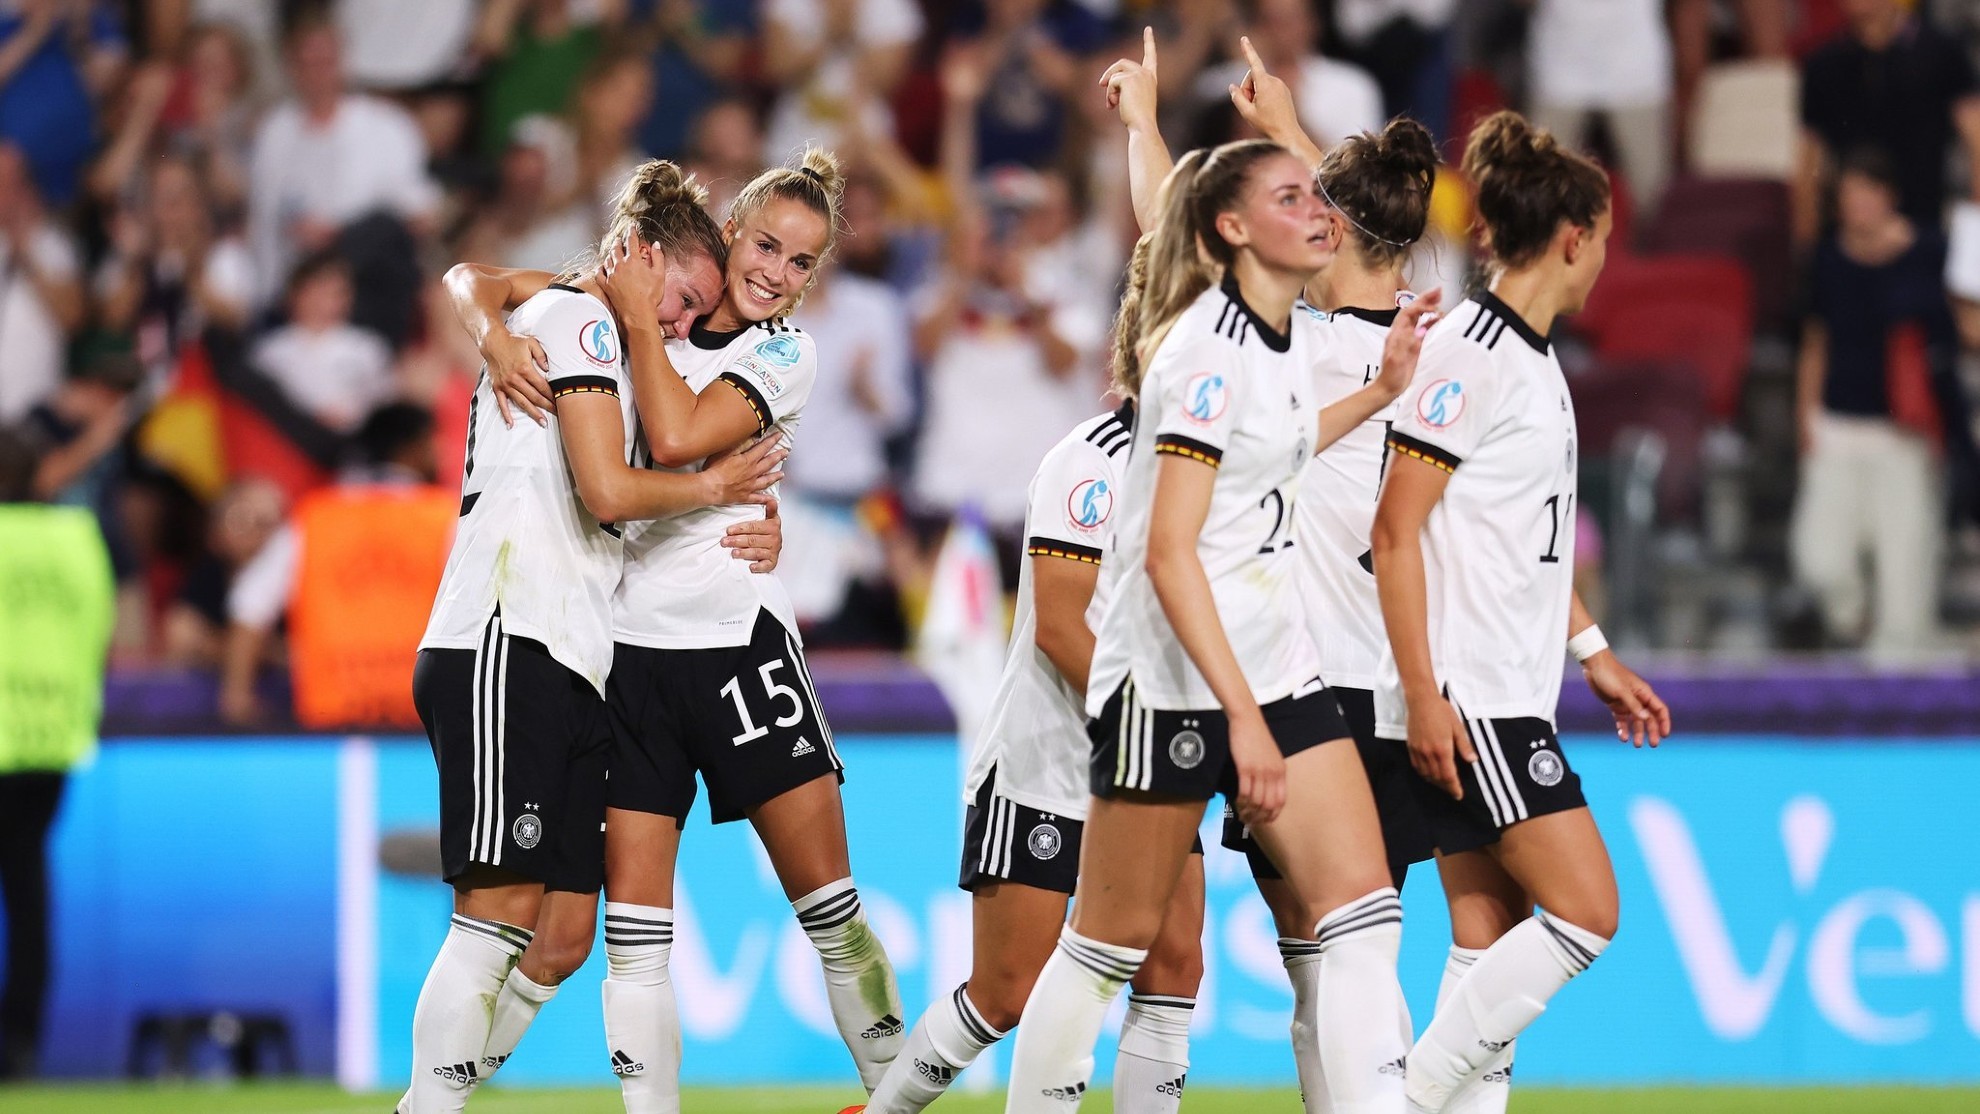 Alemania - Francia en directo | Semifinal de la Eurocopa femenina hoy en vivo